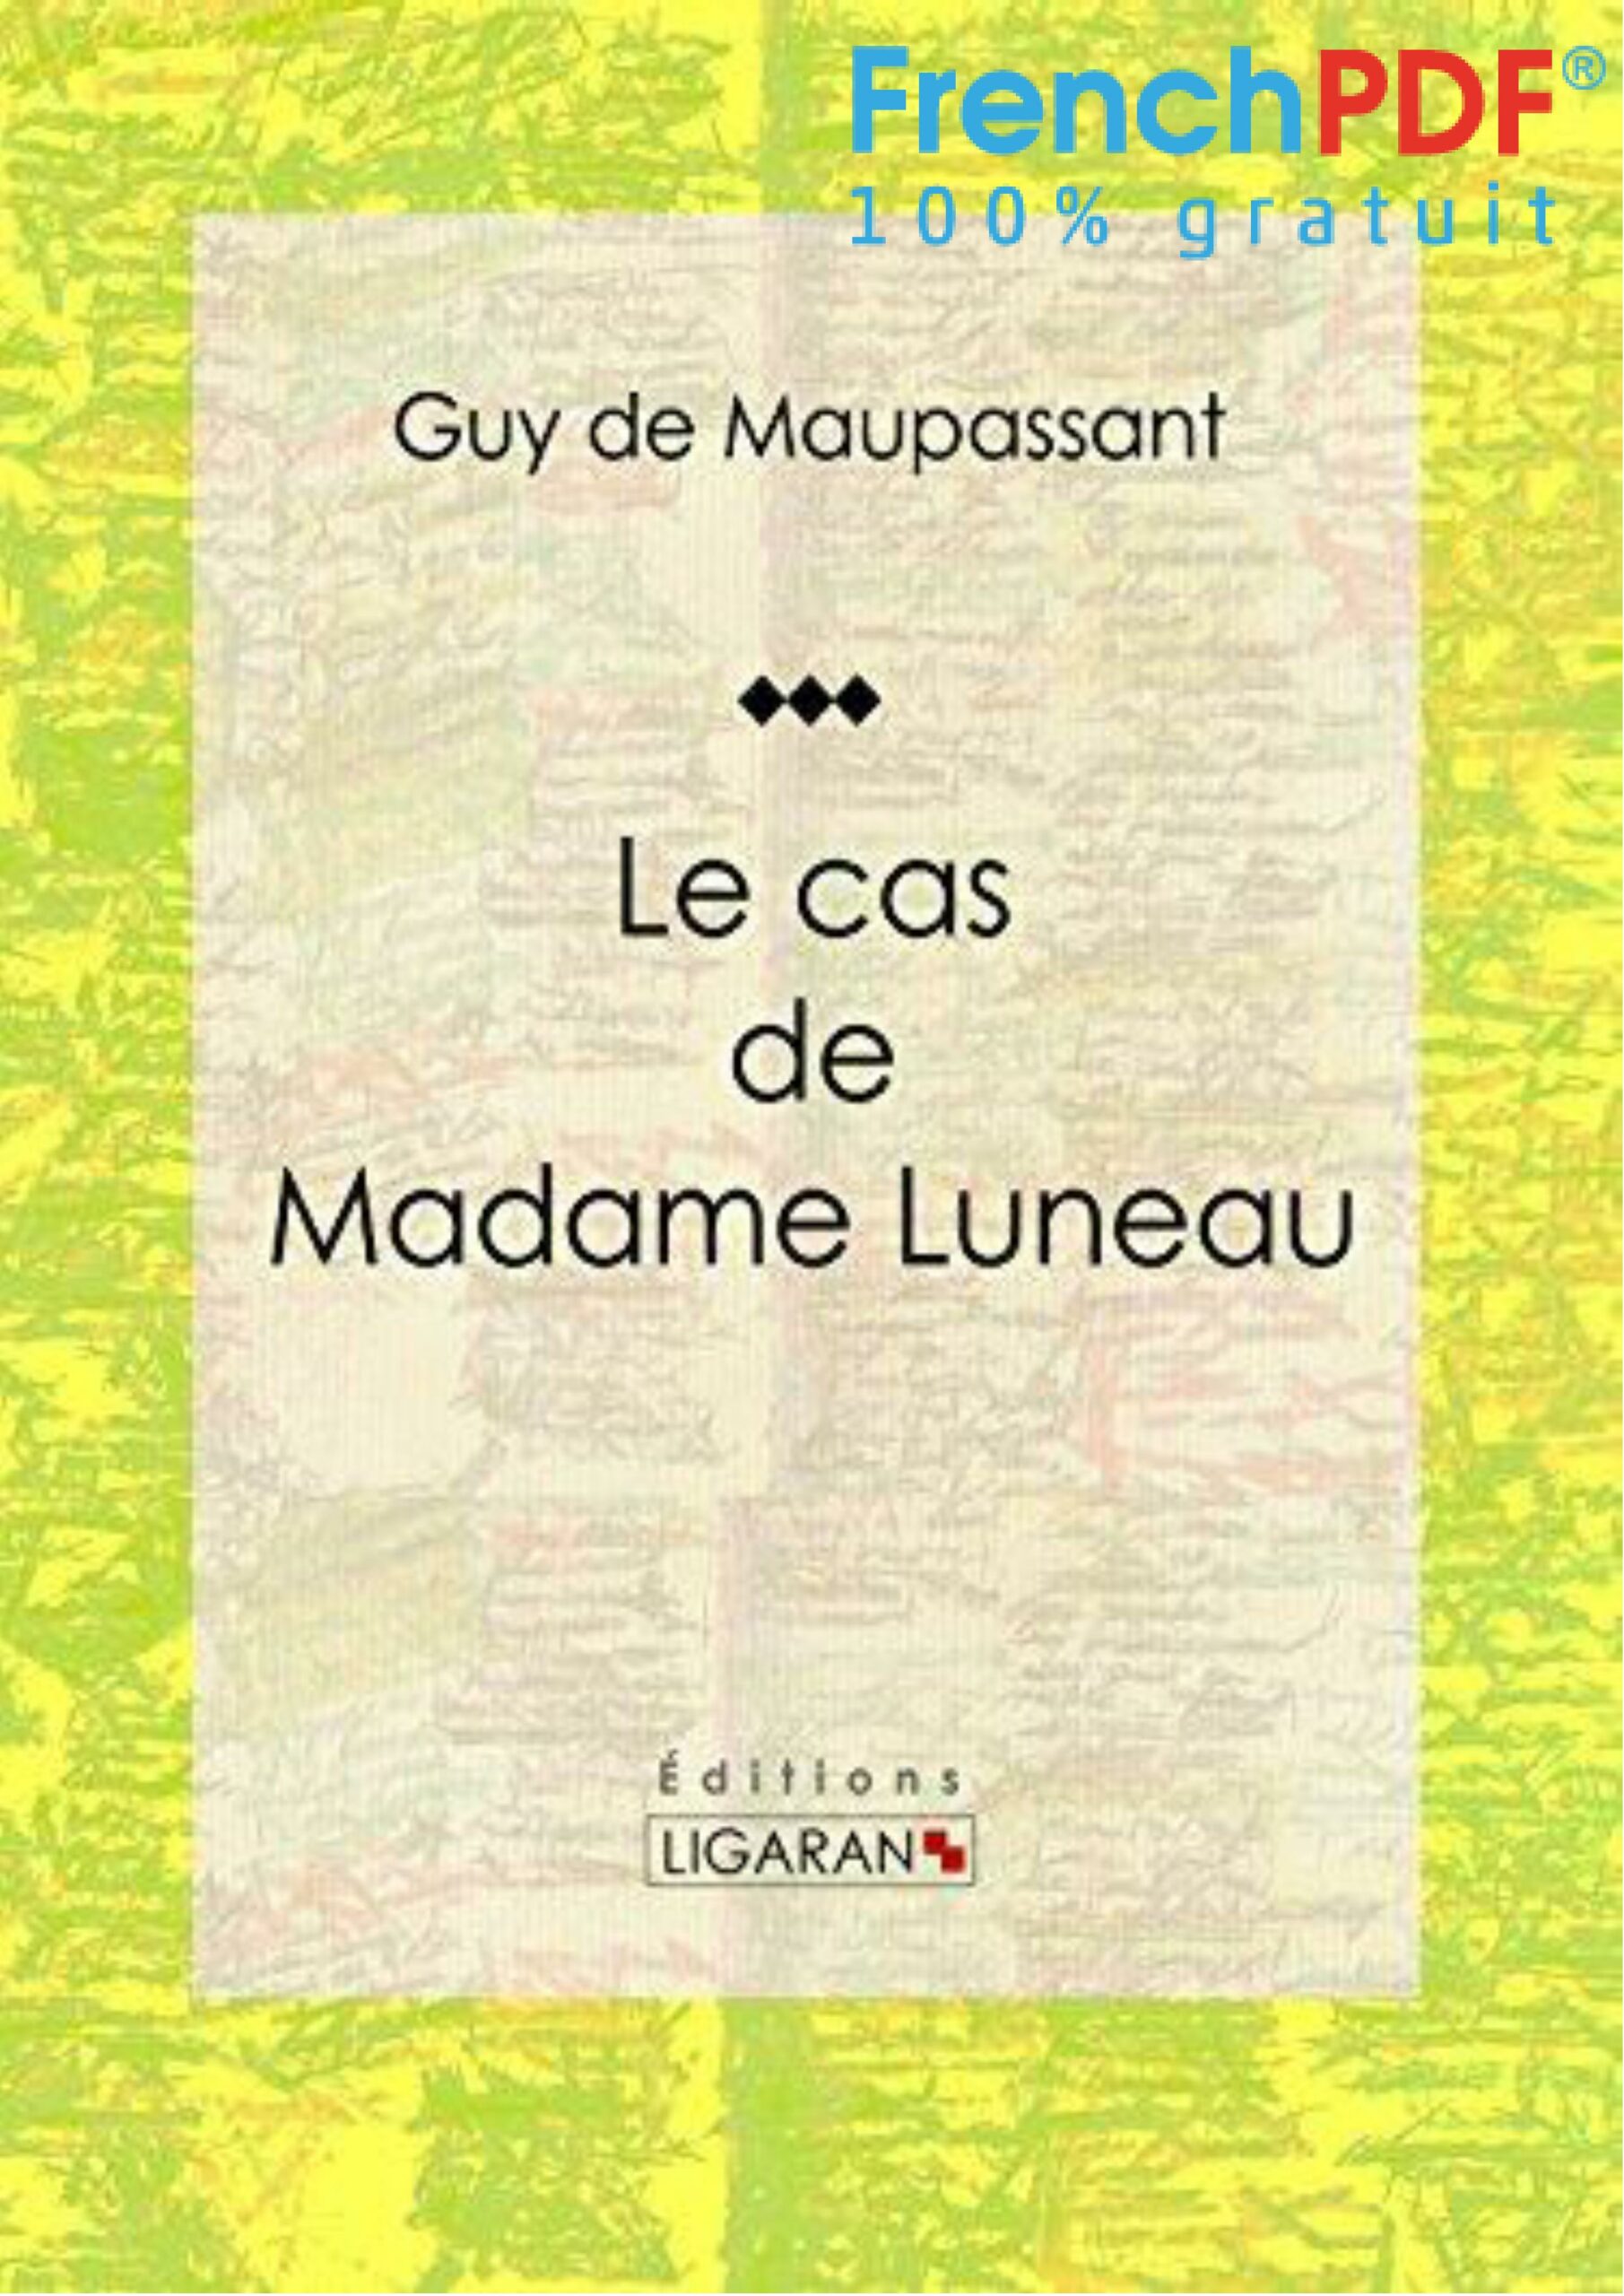 Le Cas de Mme Luneau PDF - FrenchPdf.com